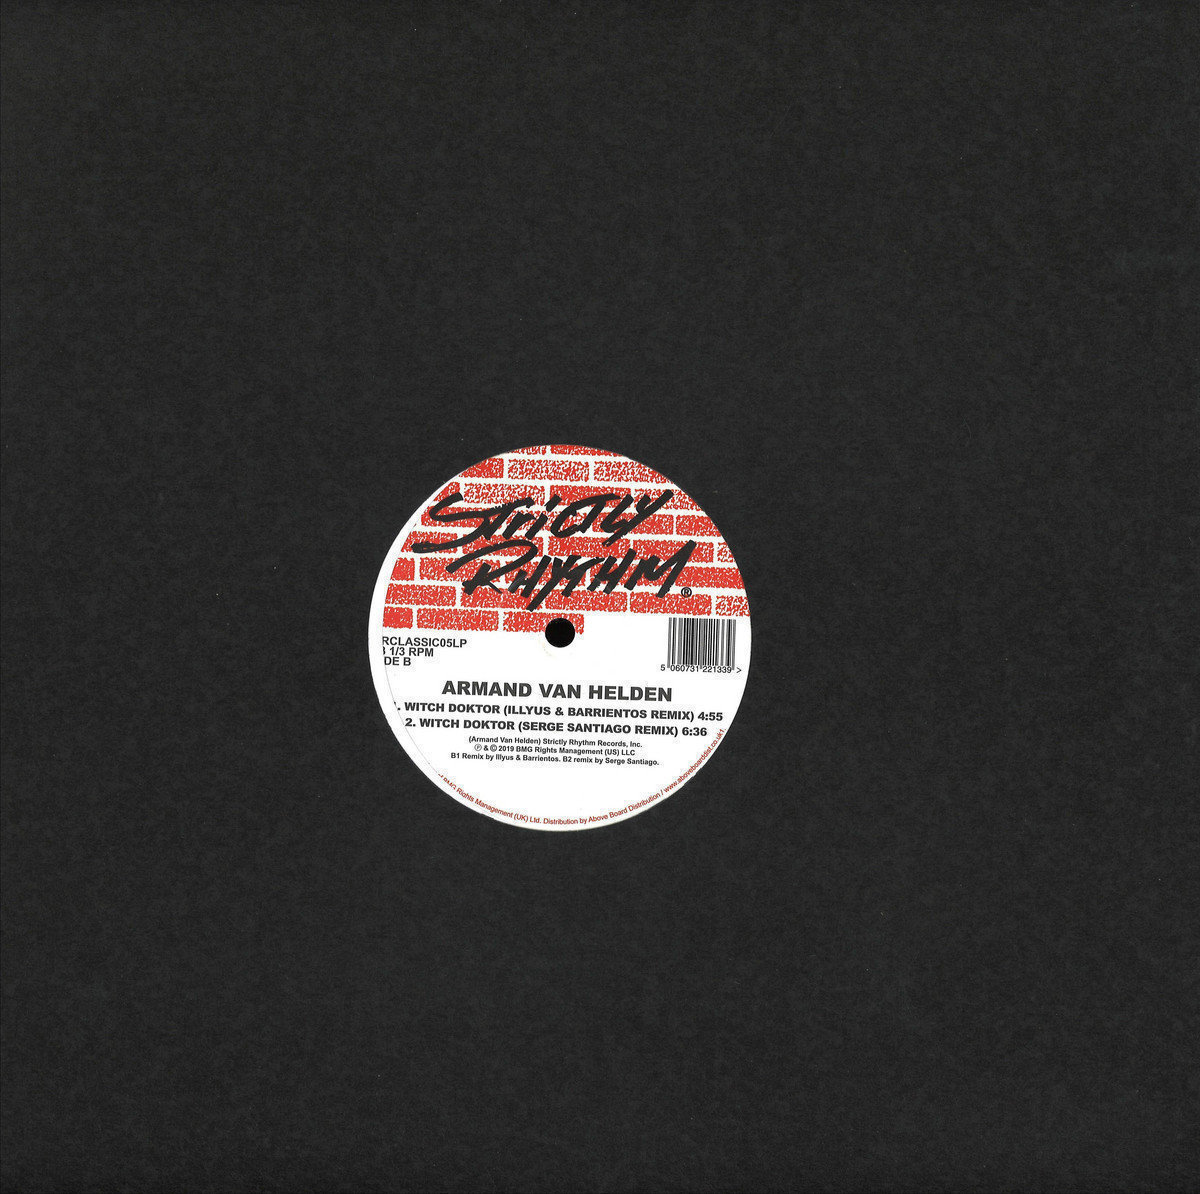 LP deska Armand van Helden - Witch Doktor Remixes (LP)